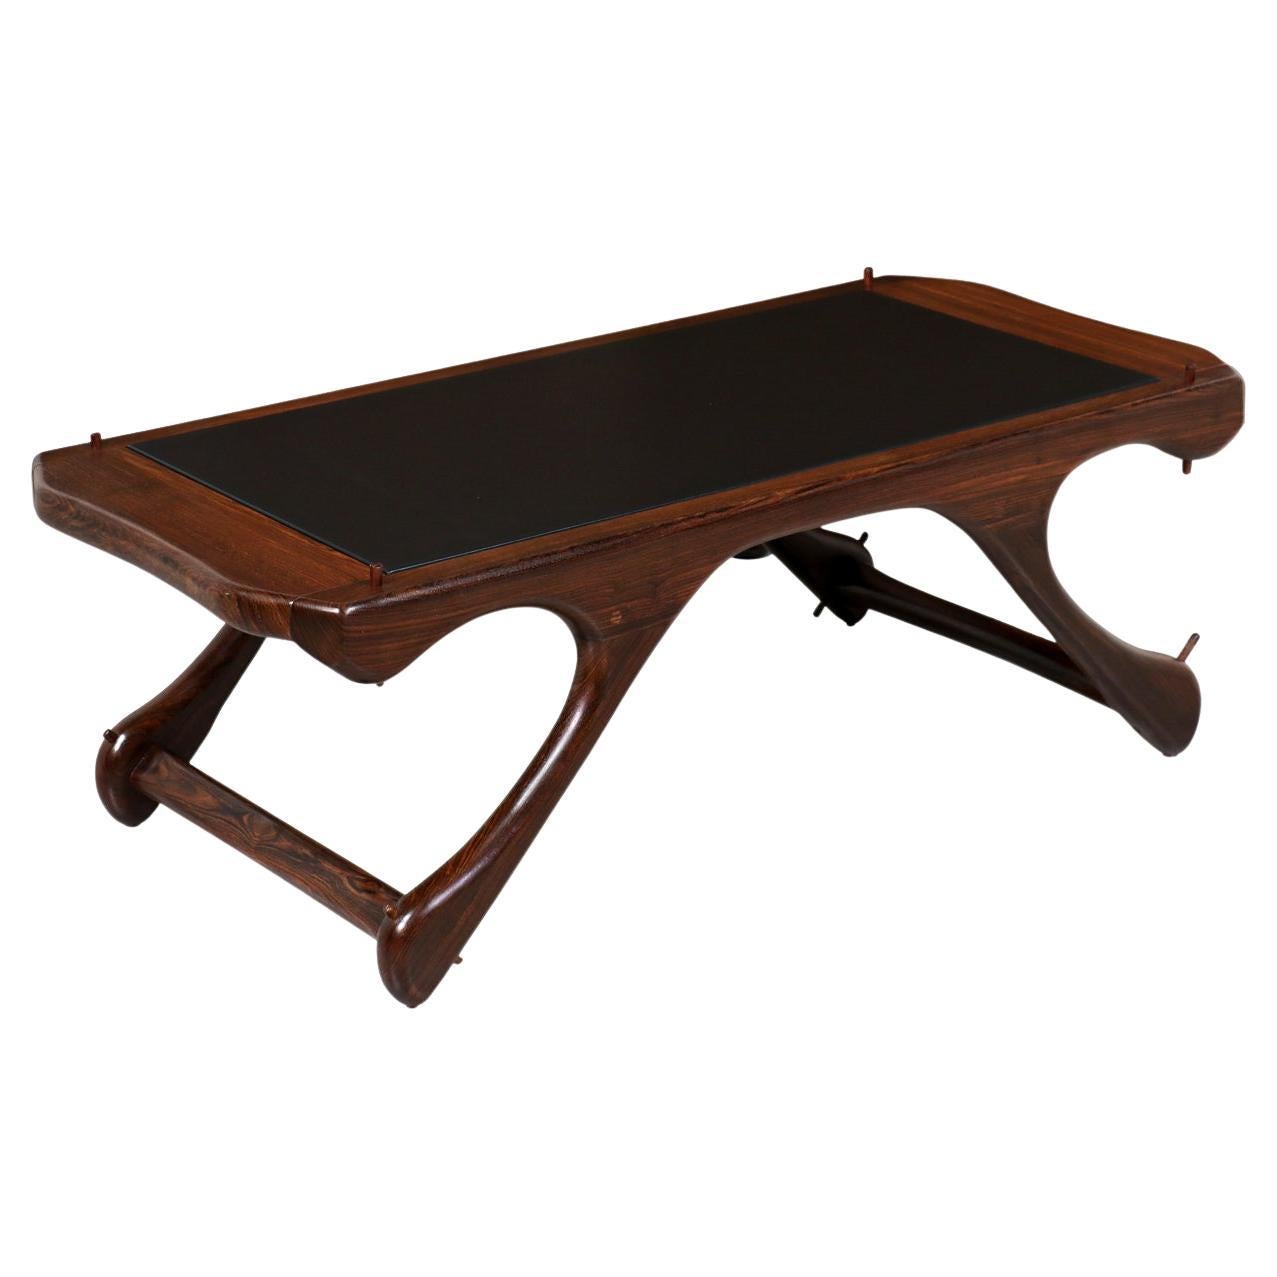 Table basse en palissandre sculpté et cuir de Don Shoemaker pour Señal Furniture